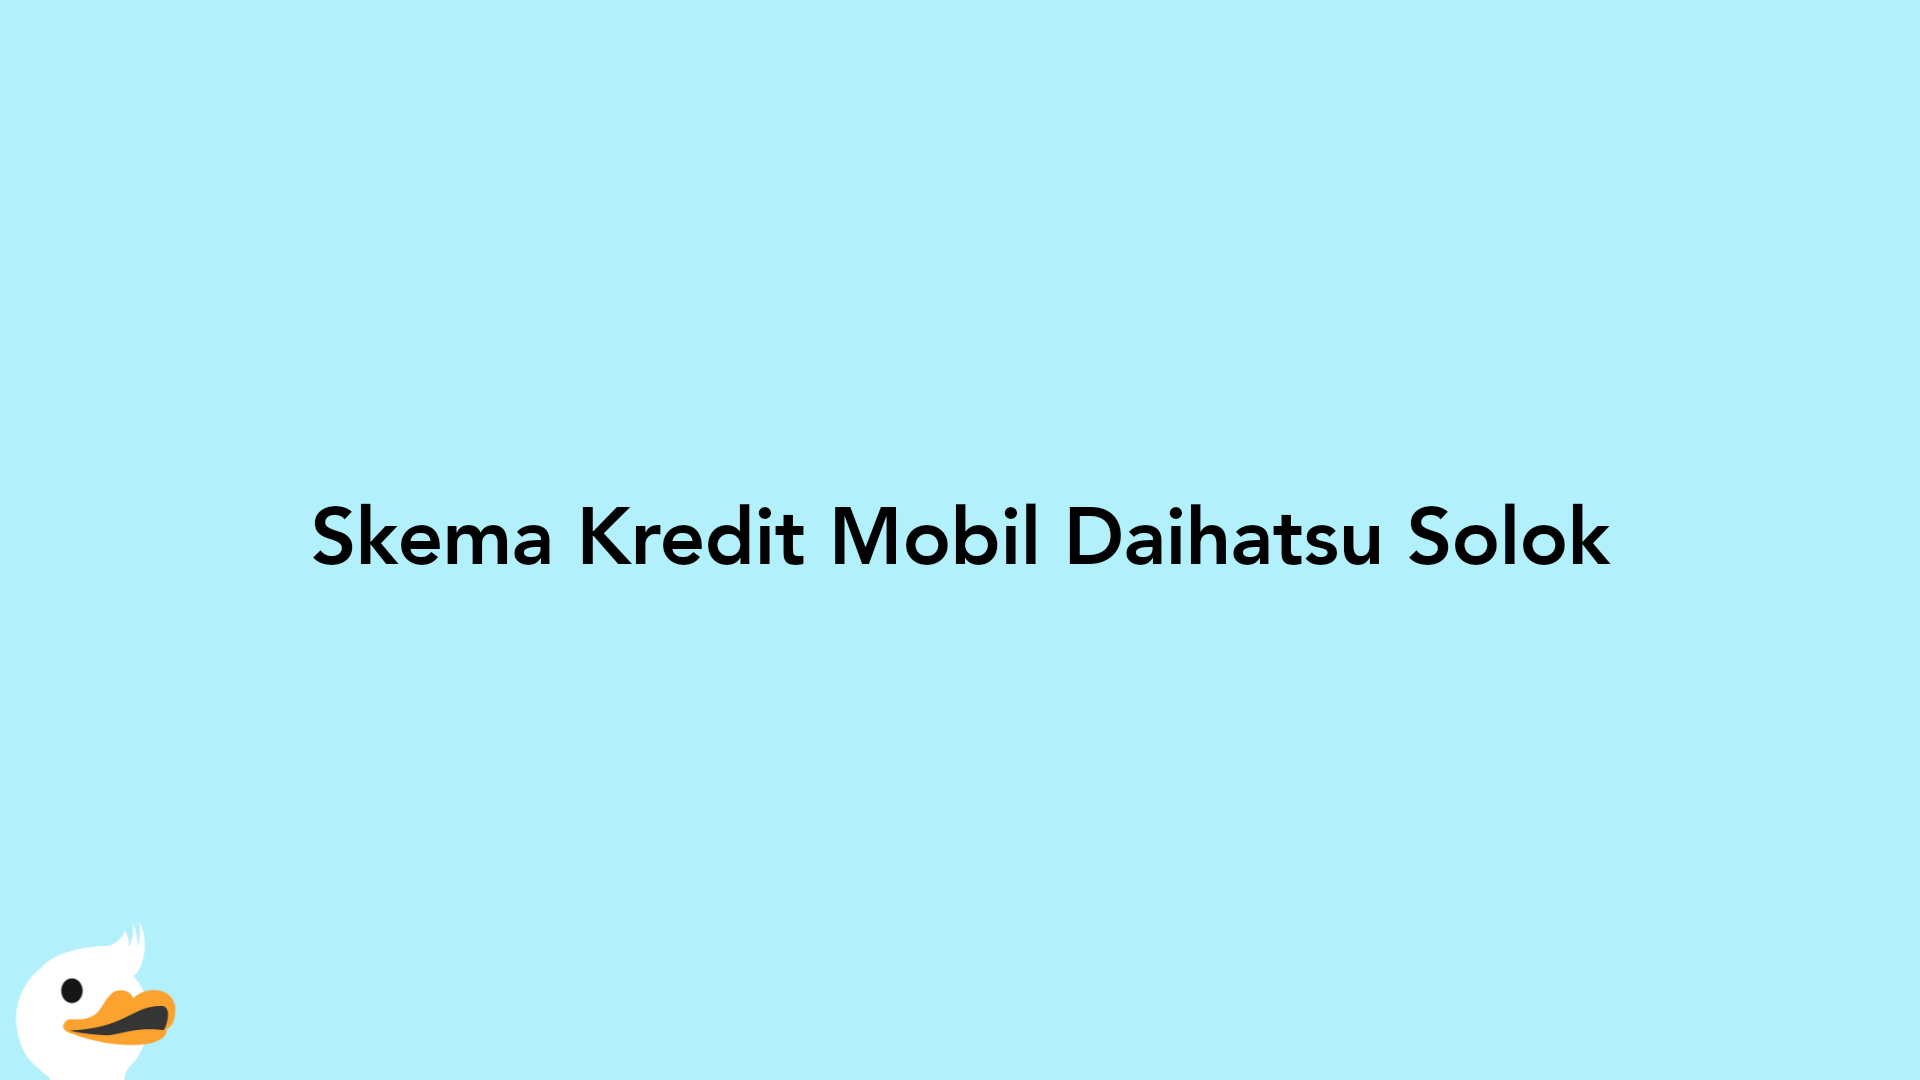 Skema Kredit Mobil Daihatsu Solok